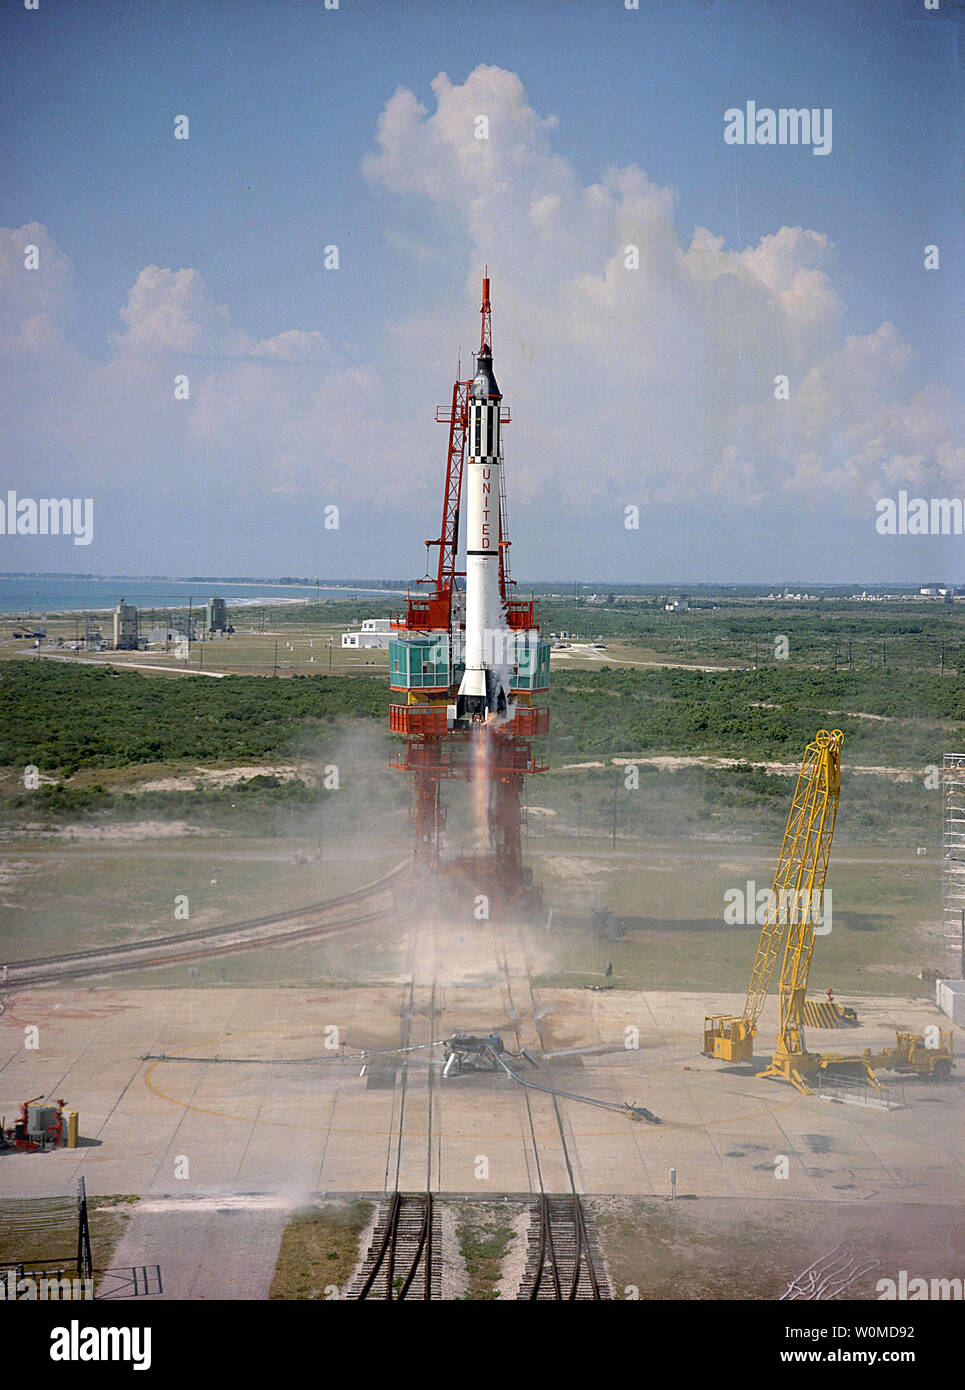 L'astronaute Alan Shepard est projeté dans l'espace au sommet d'une fusée Mercury-Redstone le 5 mai 1961. La liberté 7 est le premier vol spatial suborbital habité américain, faisant de Shepard le premier Américain dans l'espace. Plus tard, il commandait la mission Apollo 14, et a été la cinquième personne à marcher sur la lune. (Photo NASA/UPI/fichier) Banque D'Images